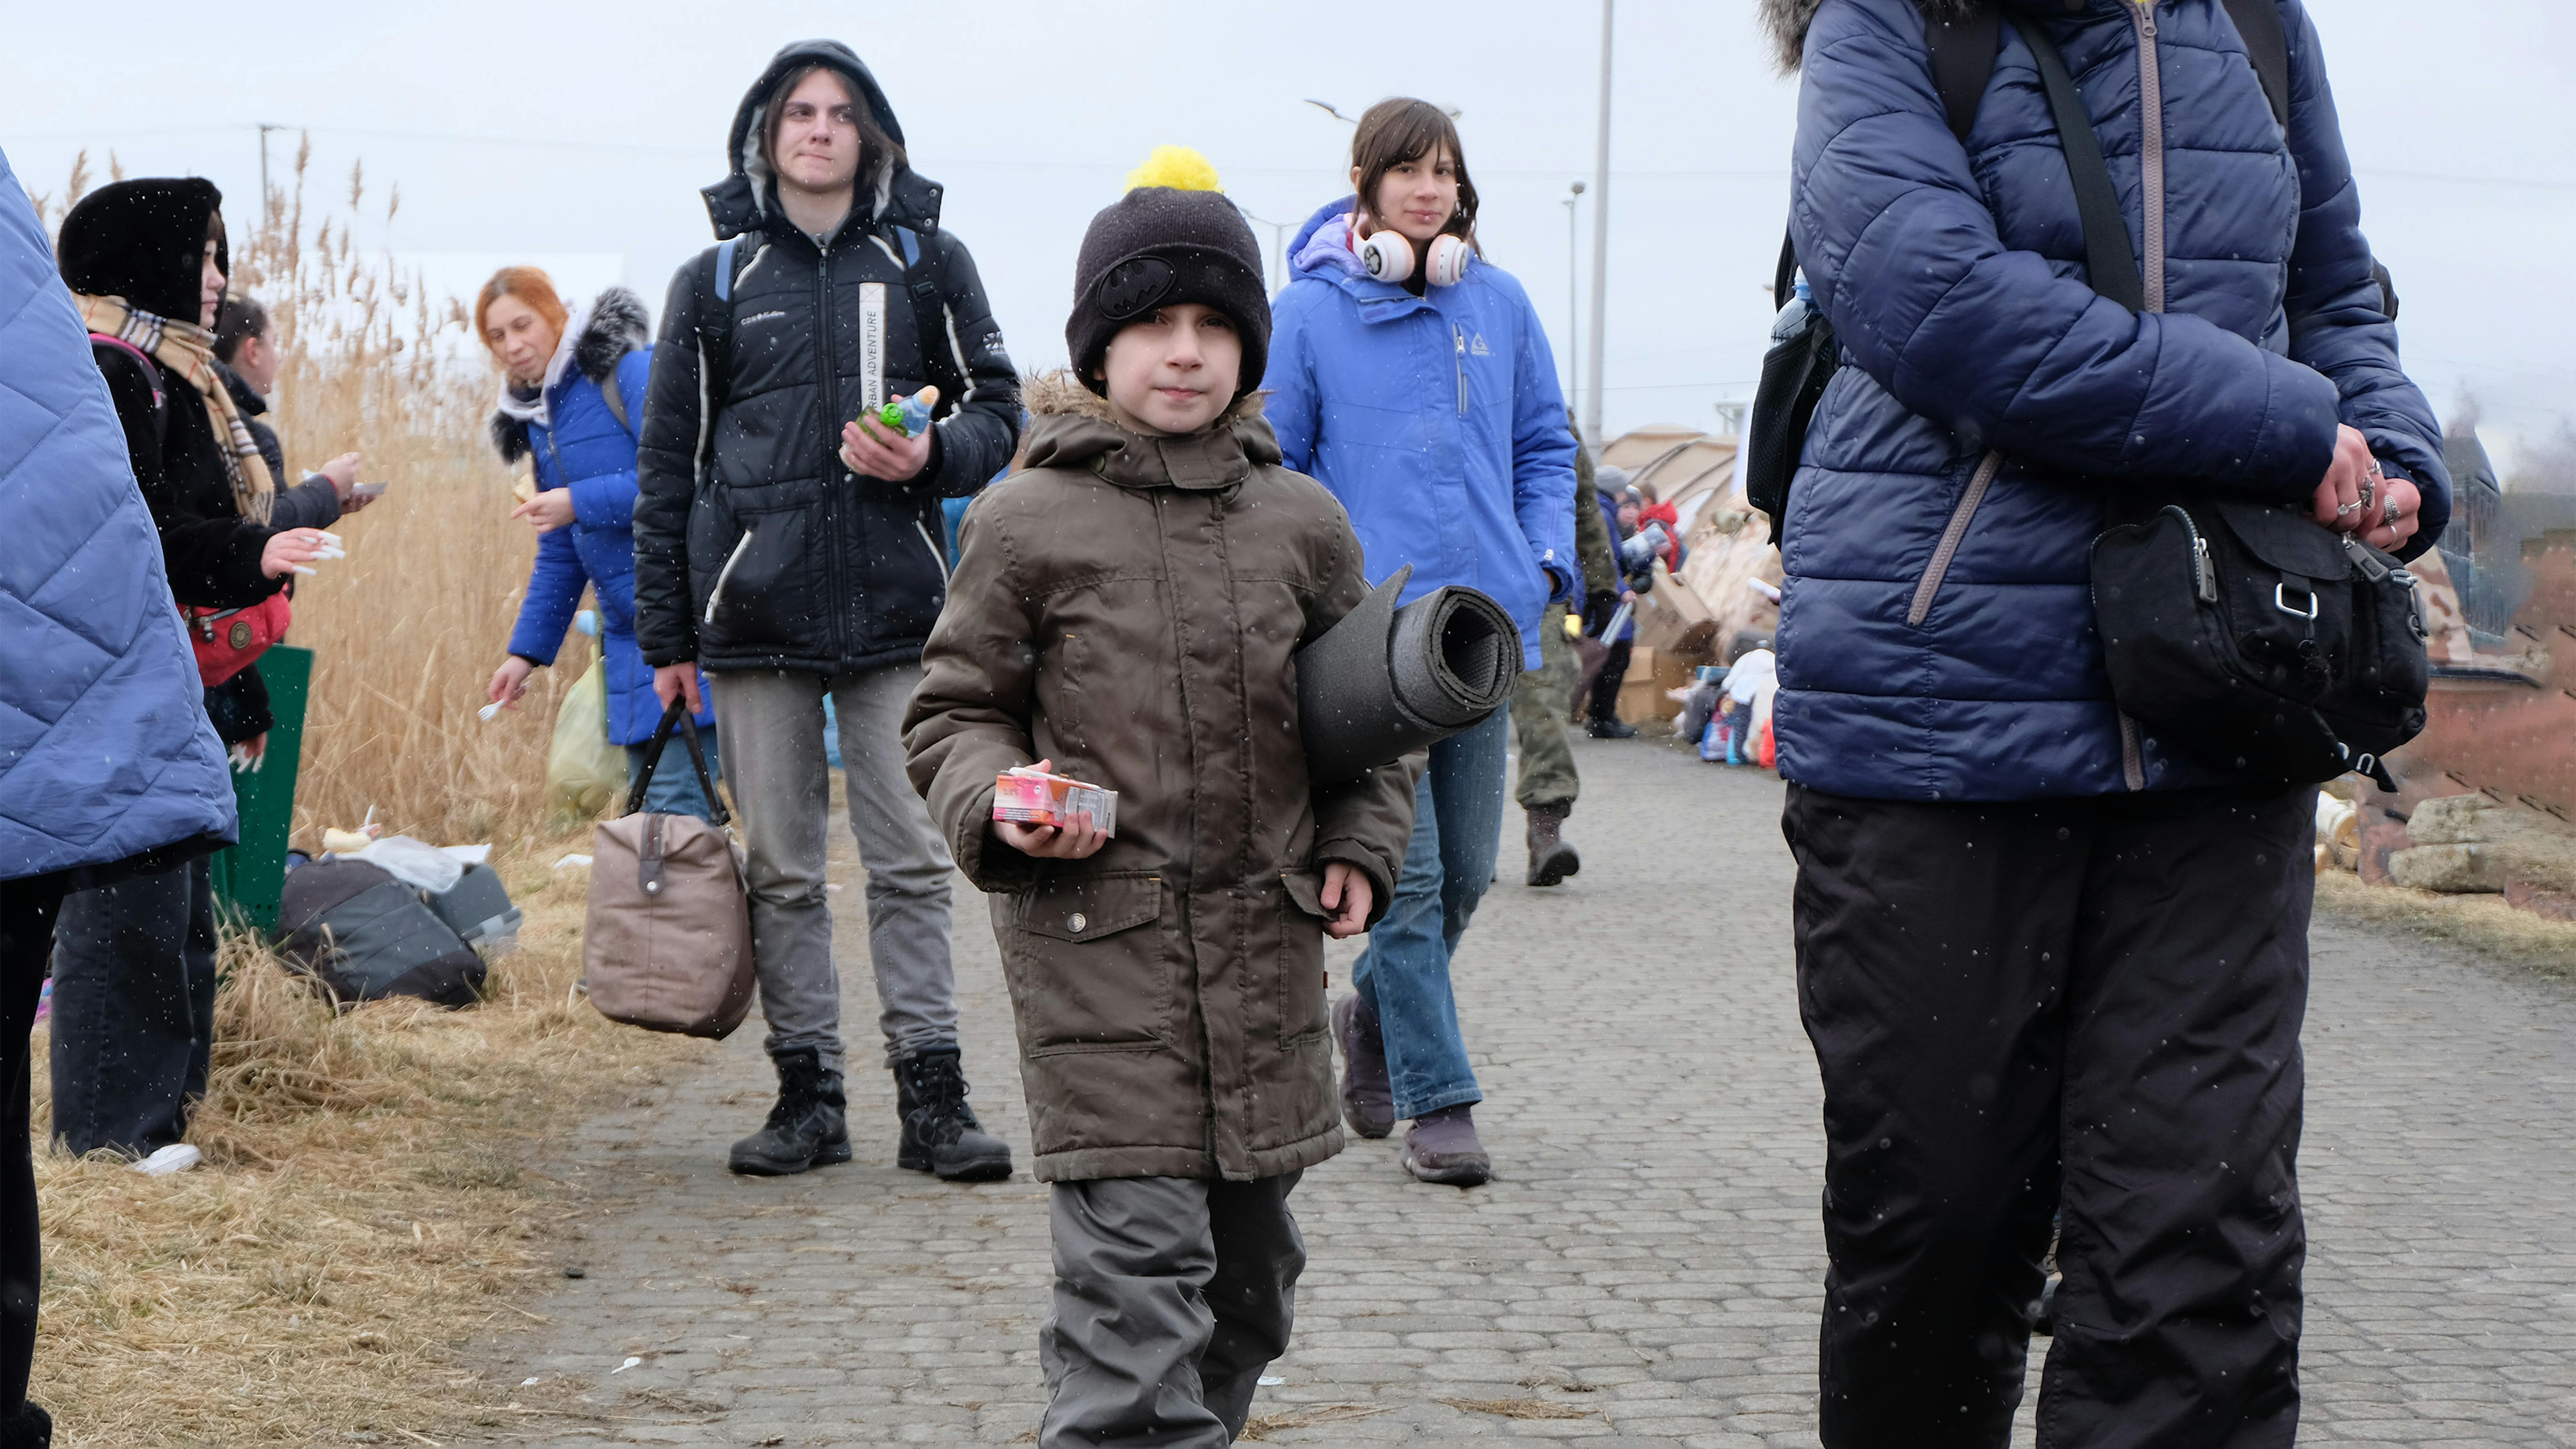 bambini e famiglie arrivano al valico di frontiera di Medyka in Polonia dopo essere fuggiti dalle violenze in Ucraina